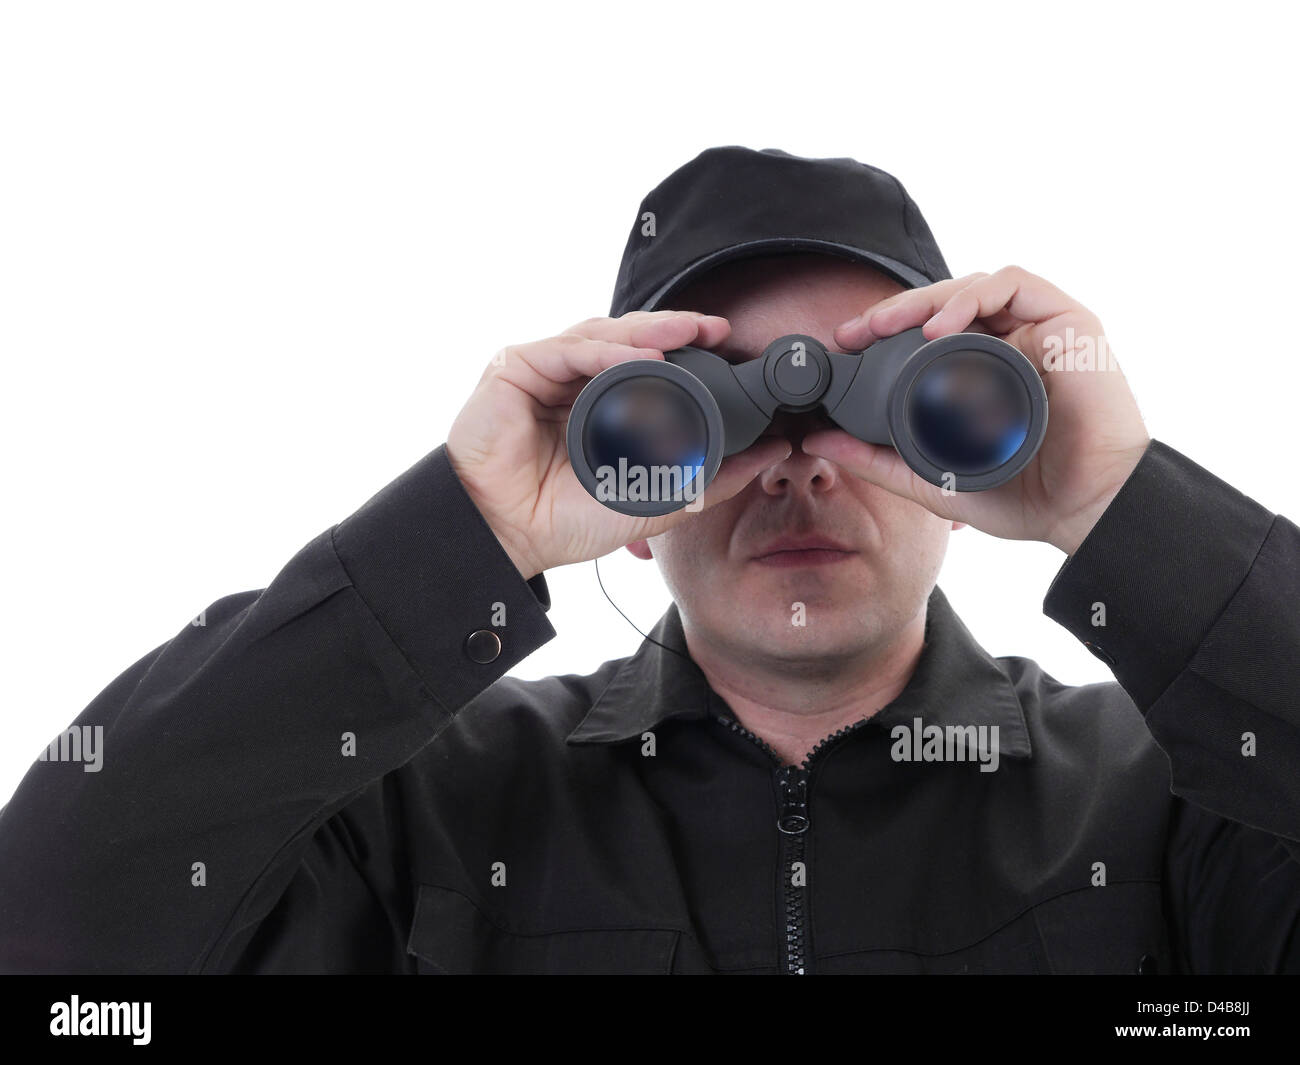 Homme portant uniforme de sécurité noir regardant à travers des jumelles, shot on white Banque D'Images